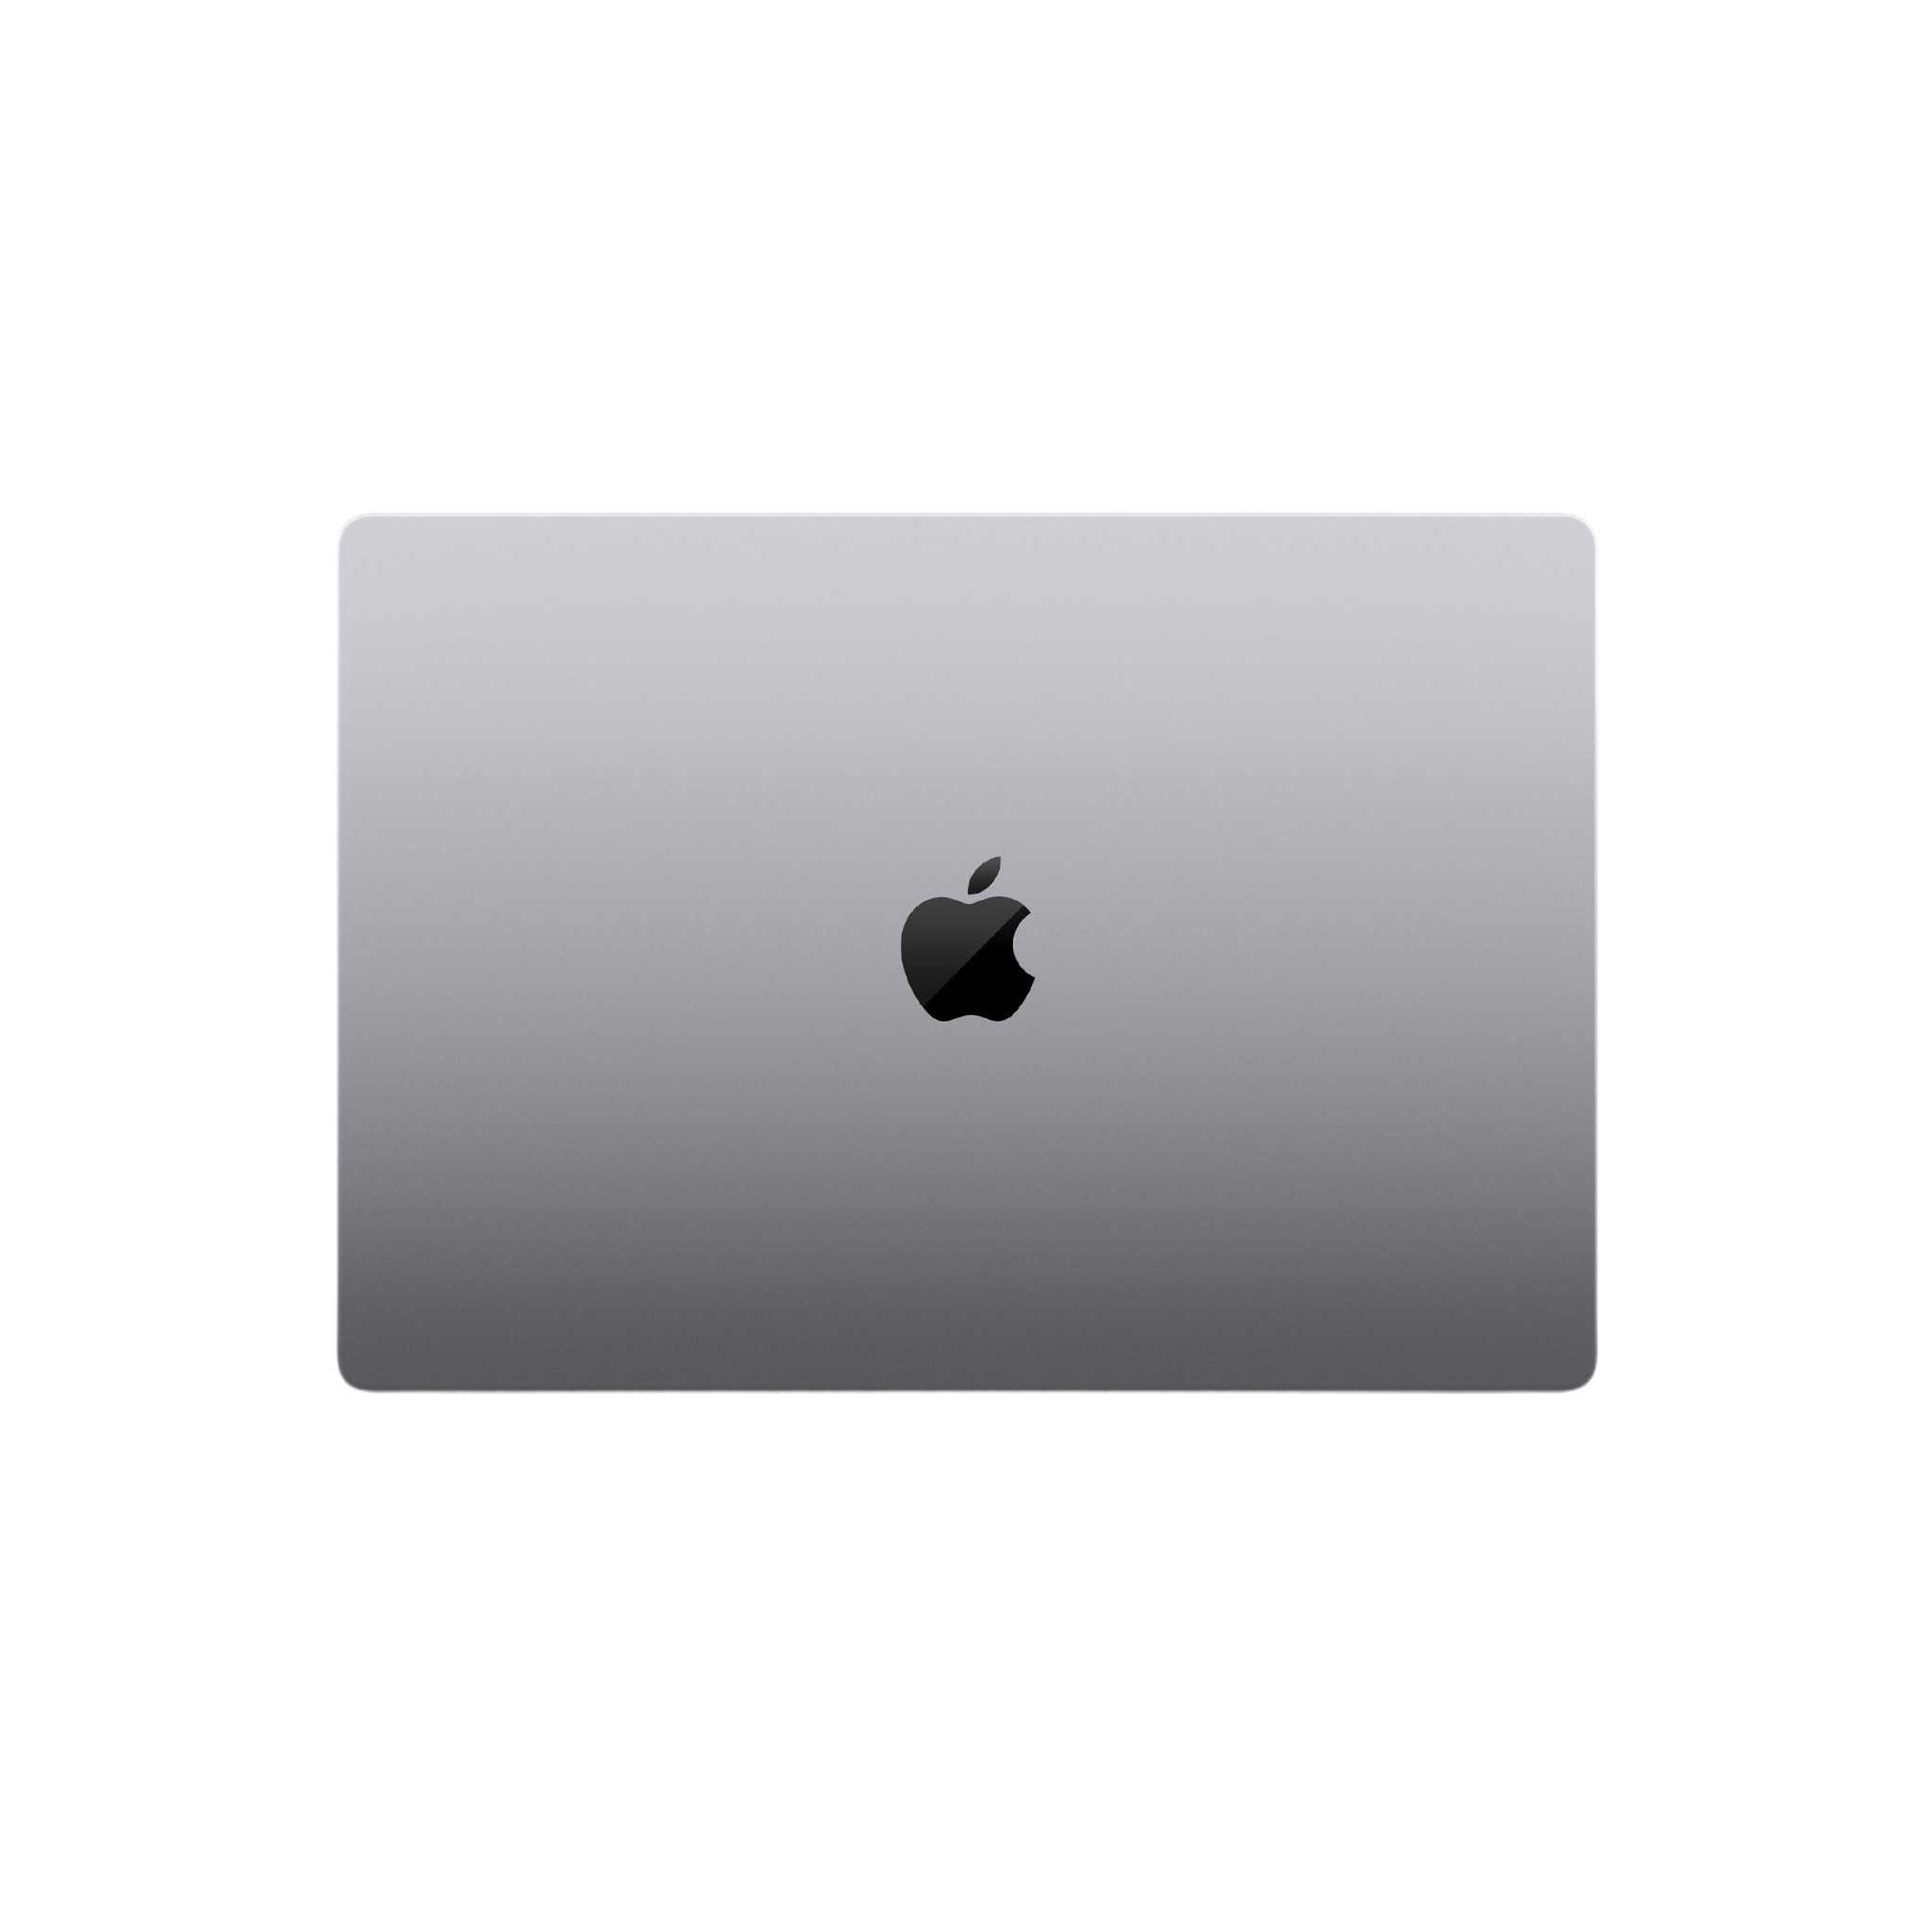 MacBook M1 Pro with 10-core CPU, 16-core GPU, 16-core Neural Engine (Space Grey)